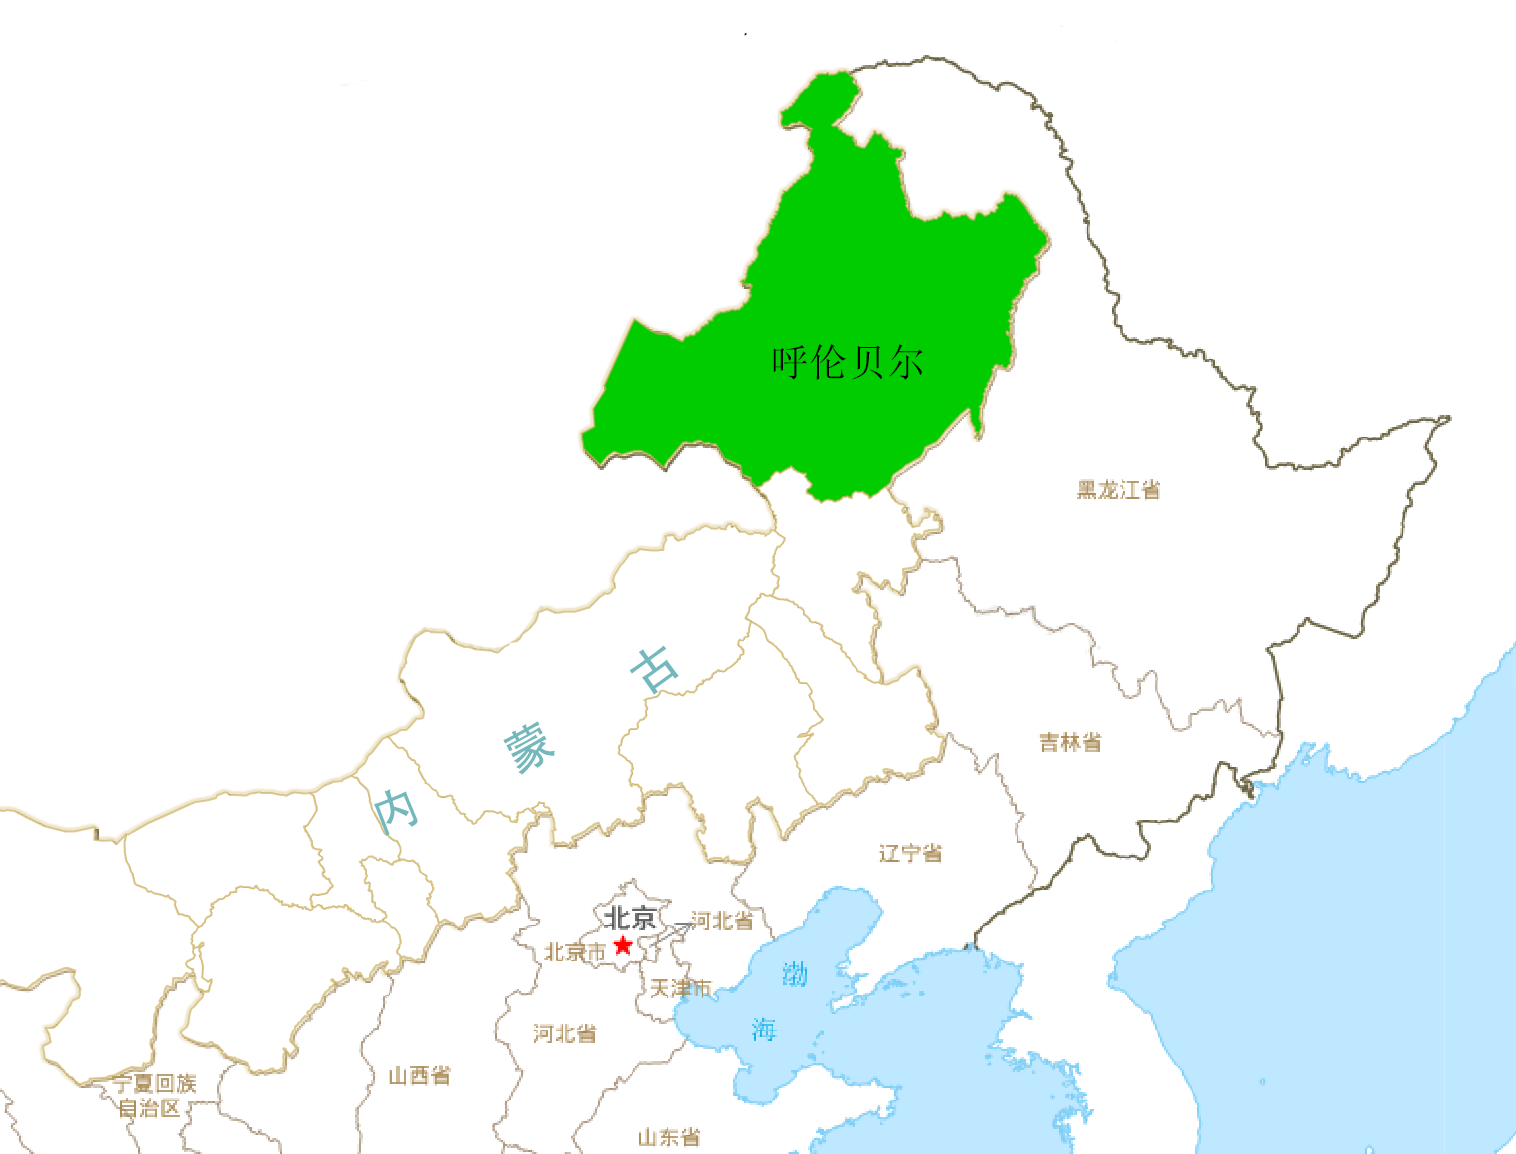 内蒙古自治区是我国陆地面积第三大的省级行政区，118